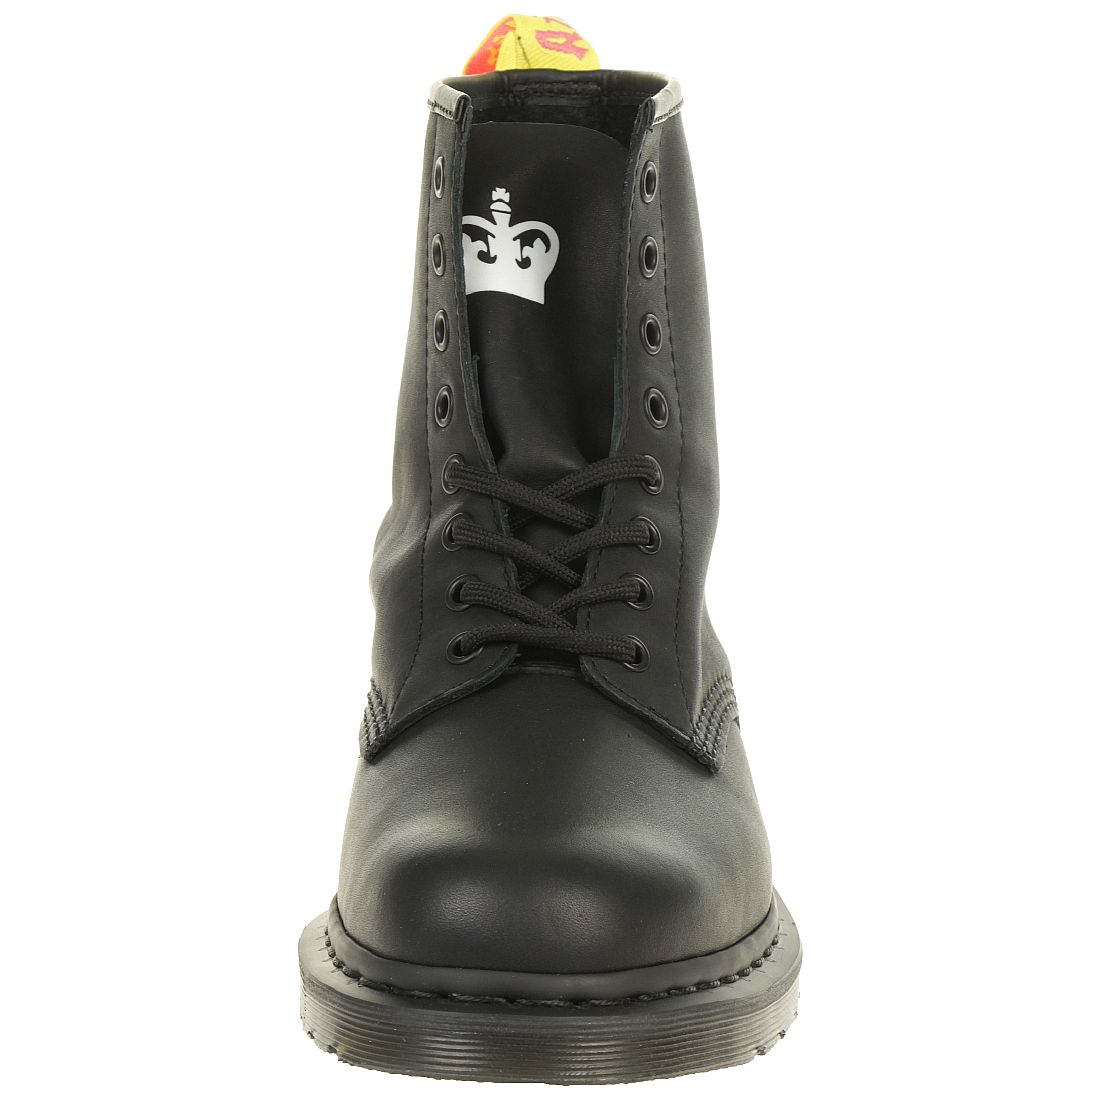 Dr. Martens 1460 SXP Backhand Black Unisex Stiefel Boots Sex Pistols schwarz